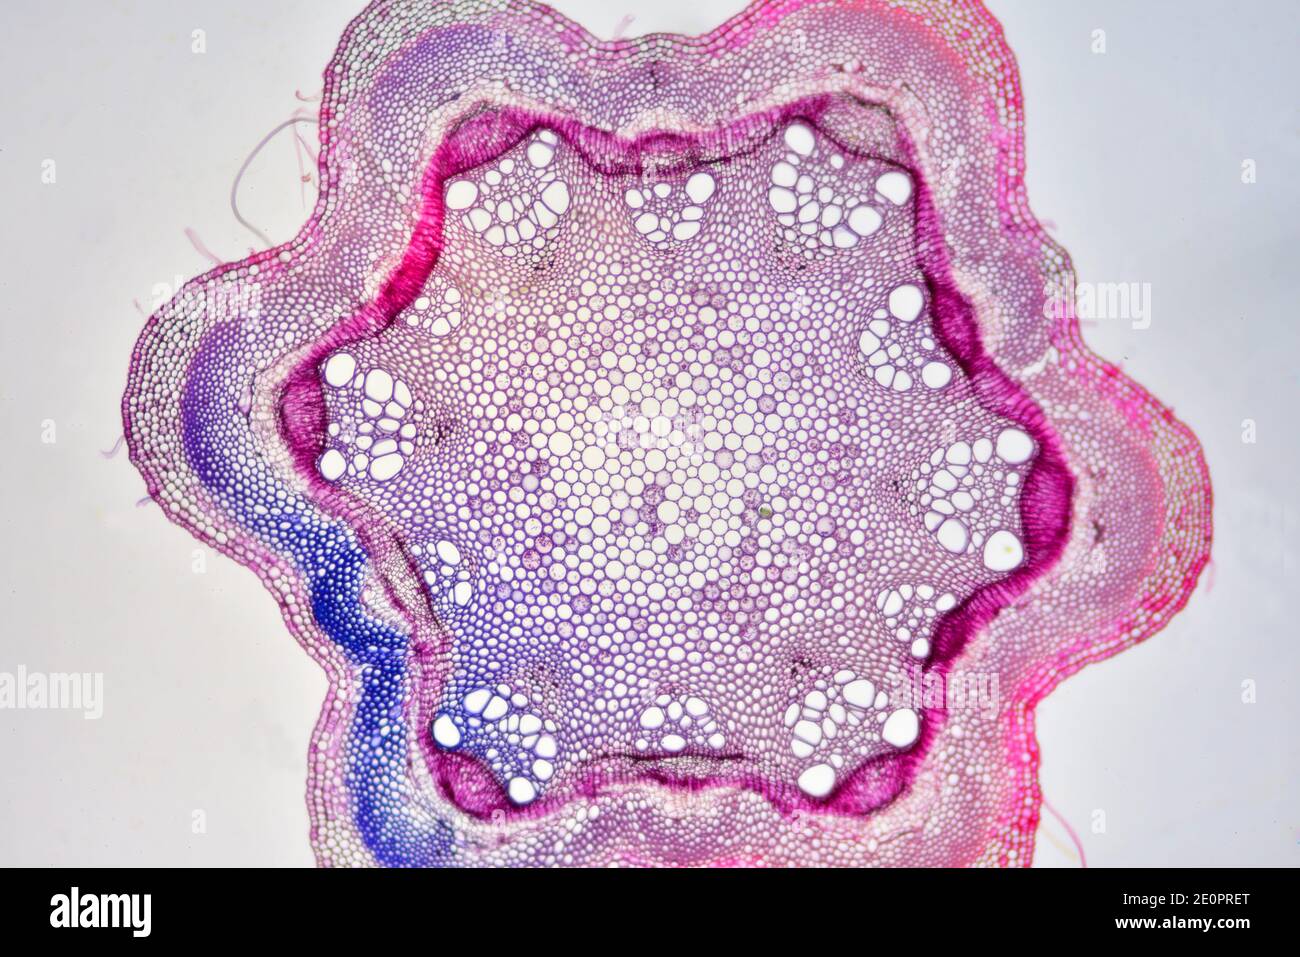 Stelo di Clematis che mostra dall'esterno all'interno: Epidermide, corteccia con colenchima e parenchima, fasci vascolari con floem e xilema, e. Foto Stock